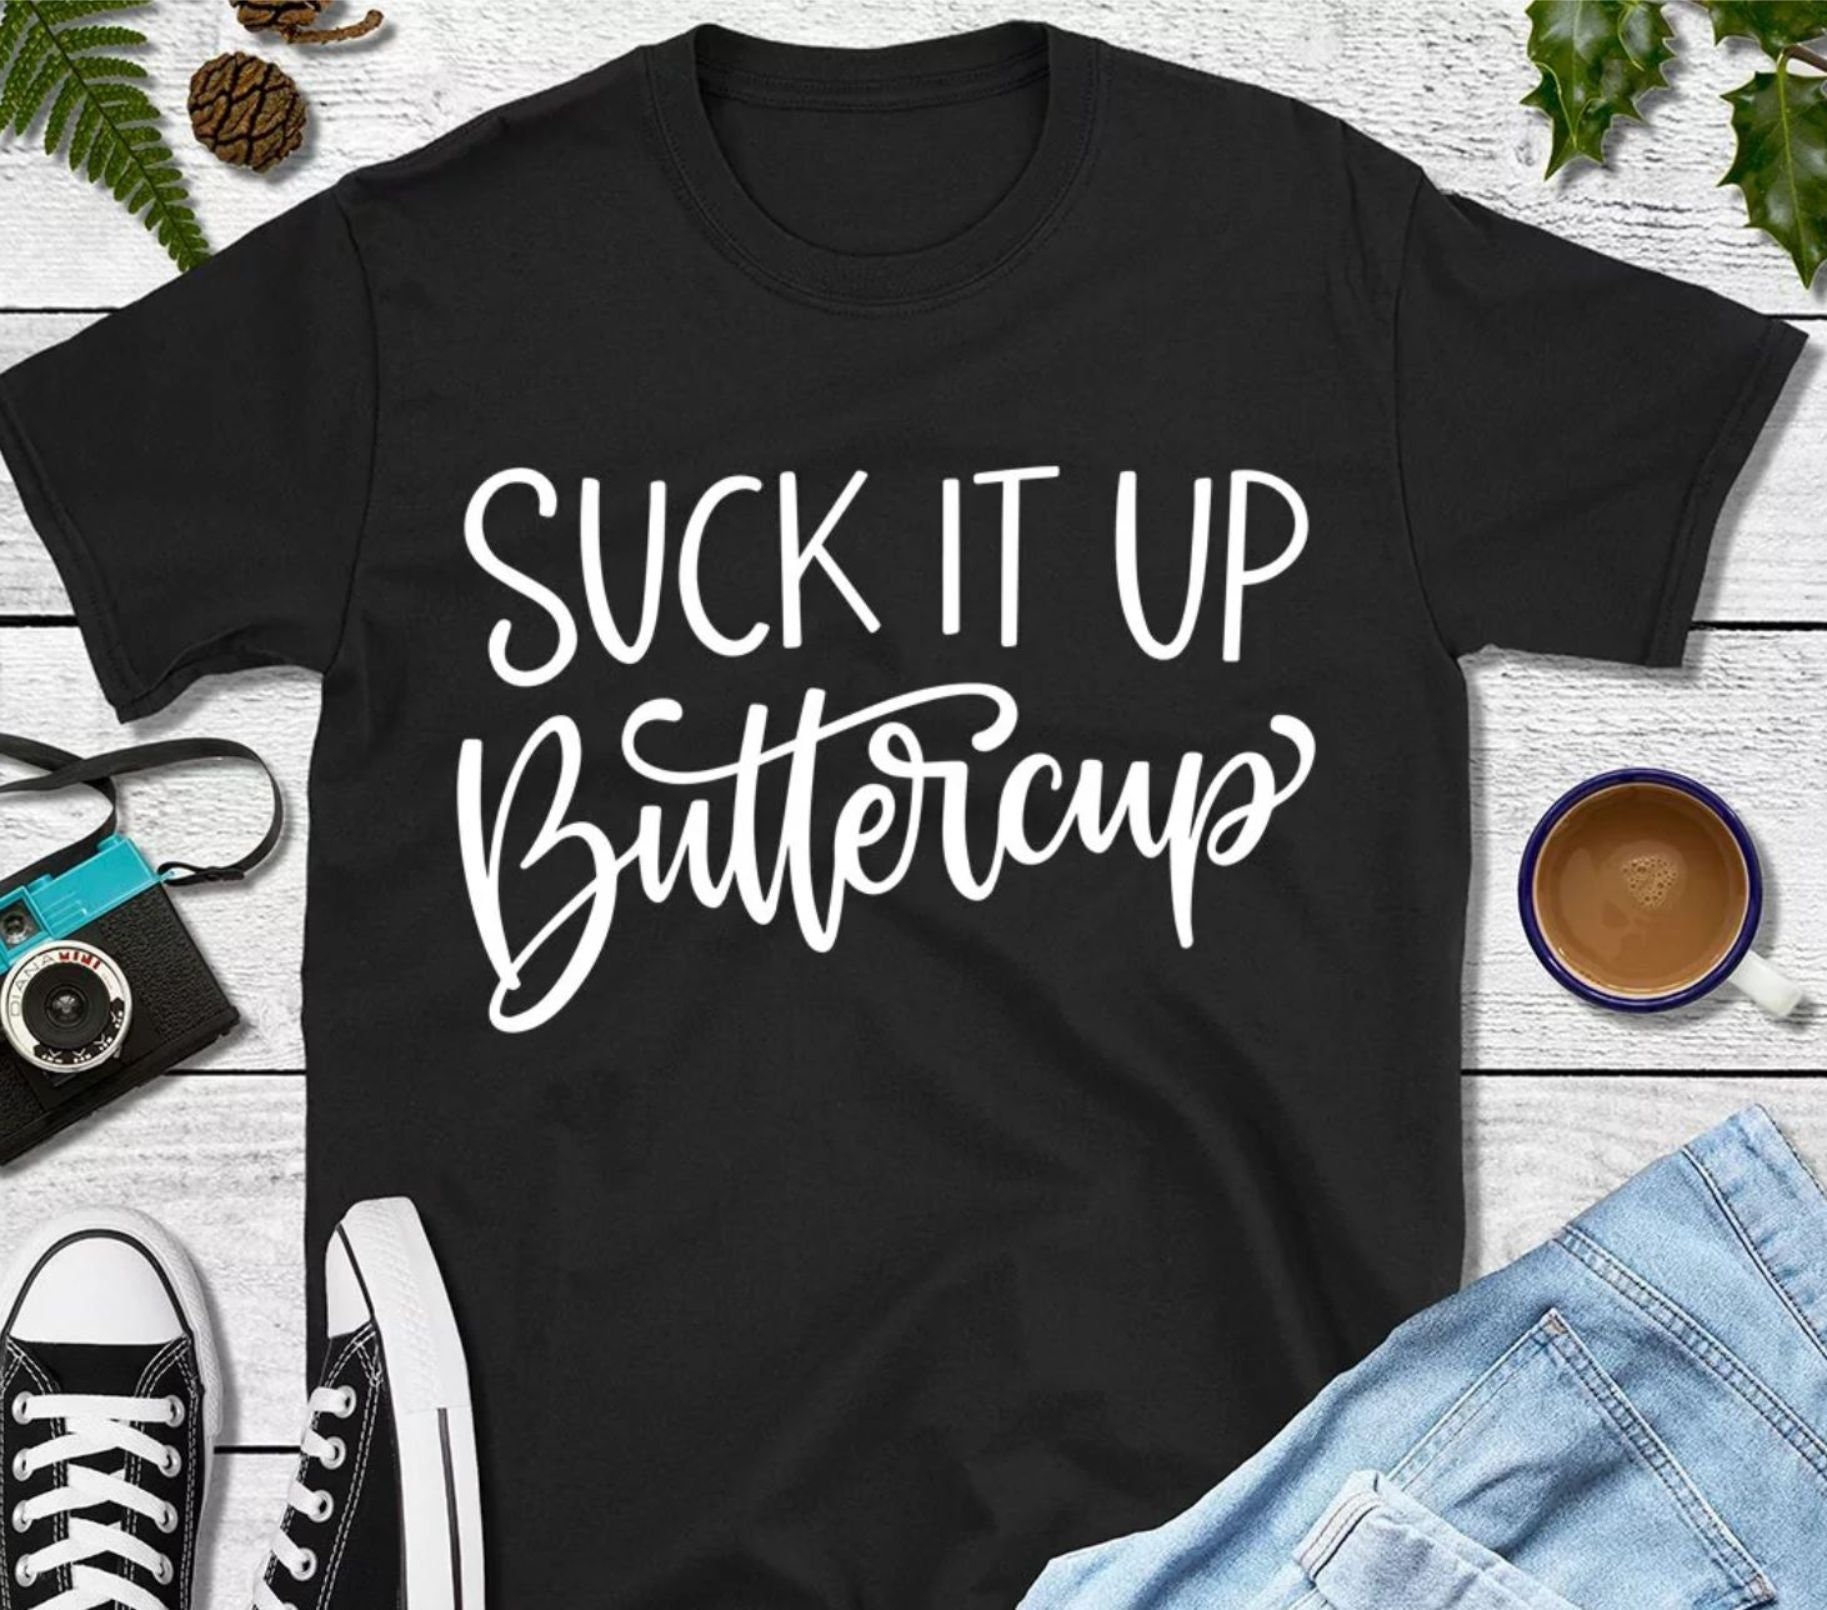 Suck it up Buttercup tee shirt, woman shirts, bridal shirt. sarcastic